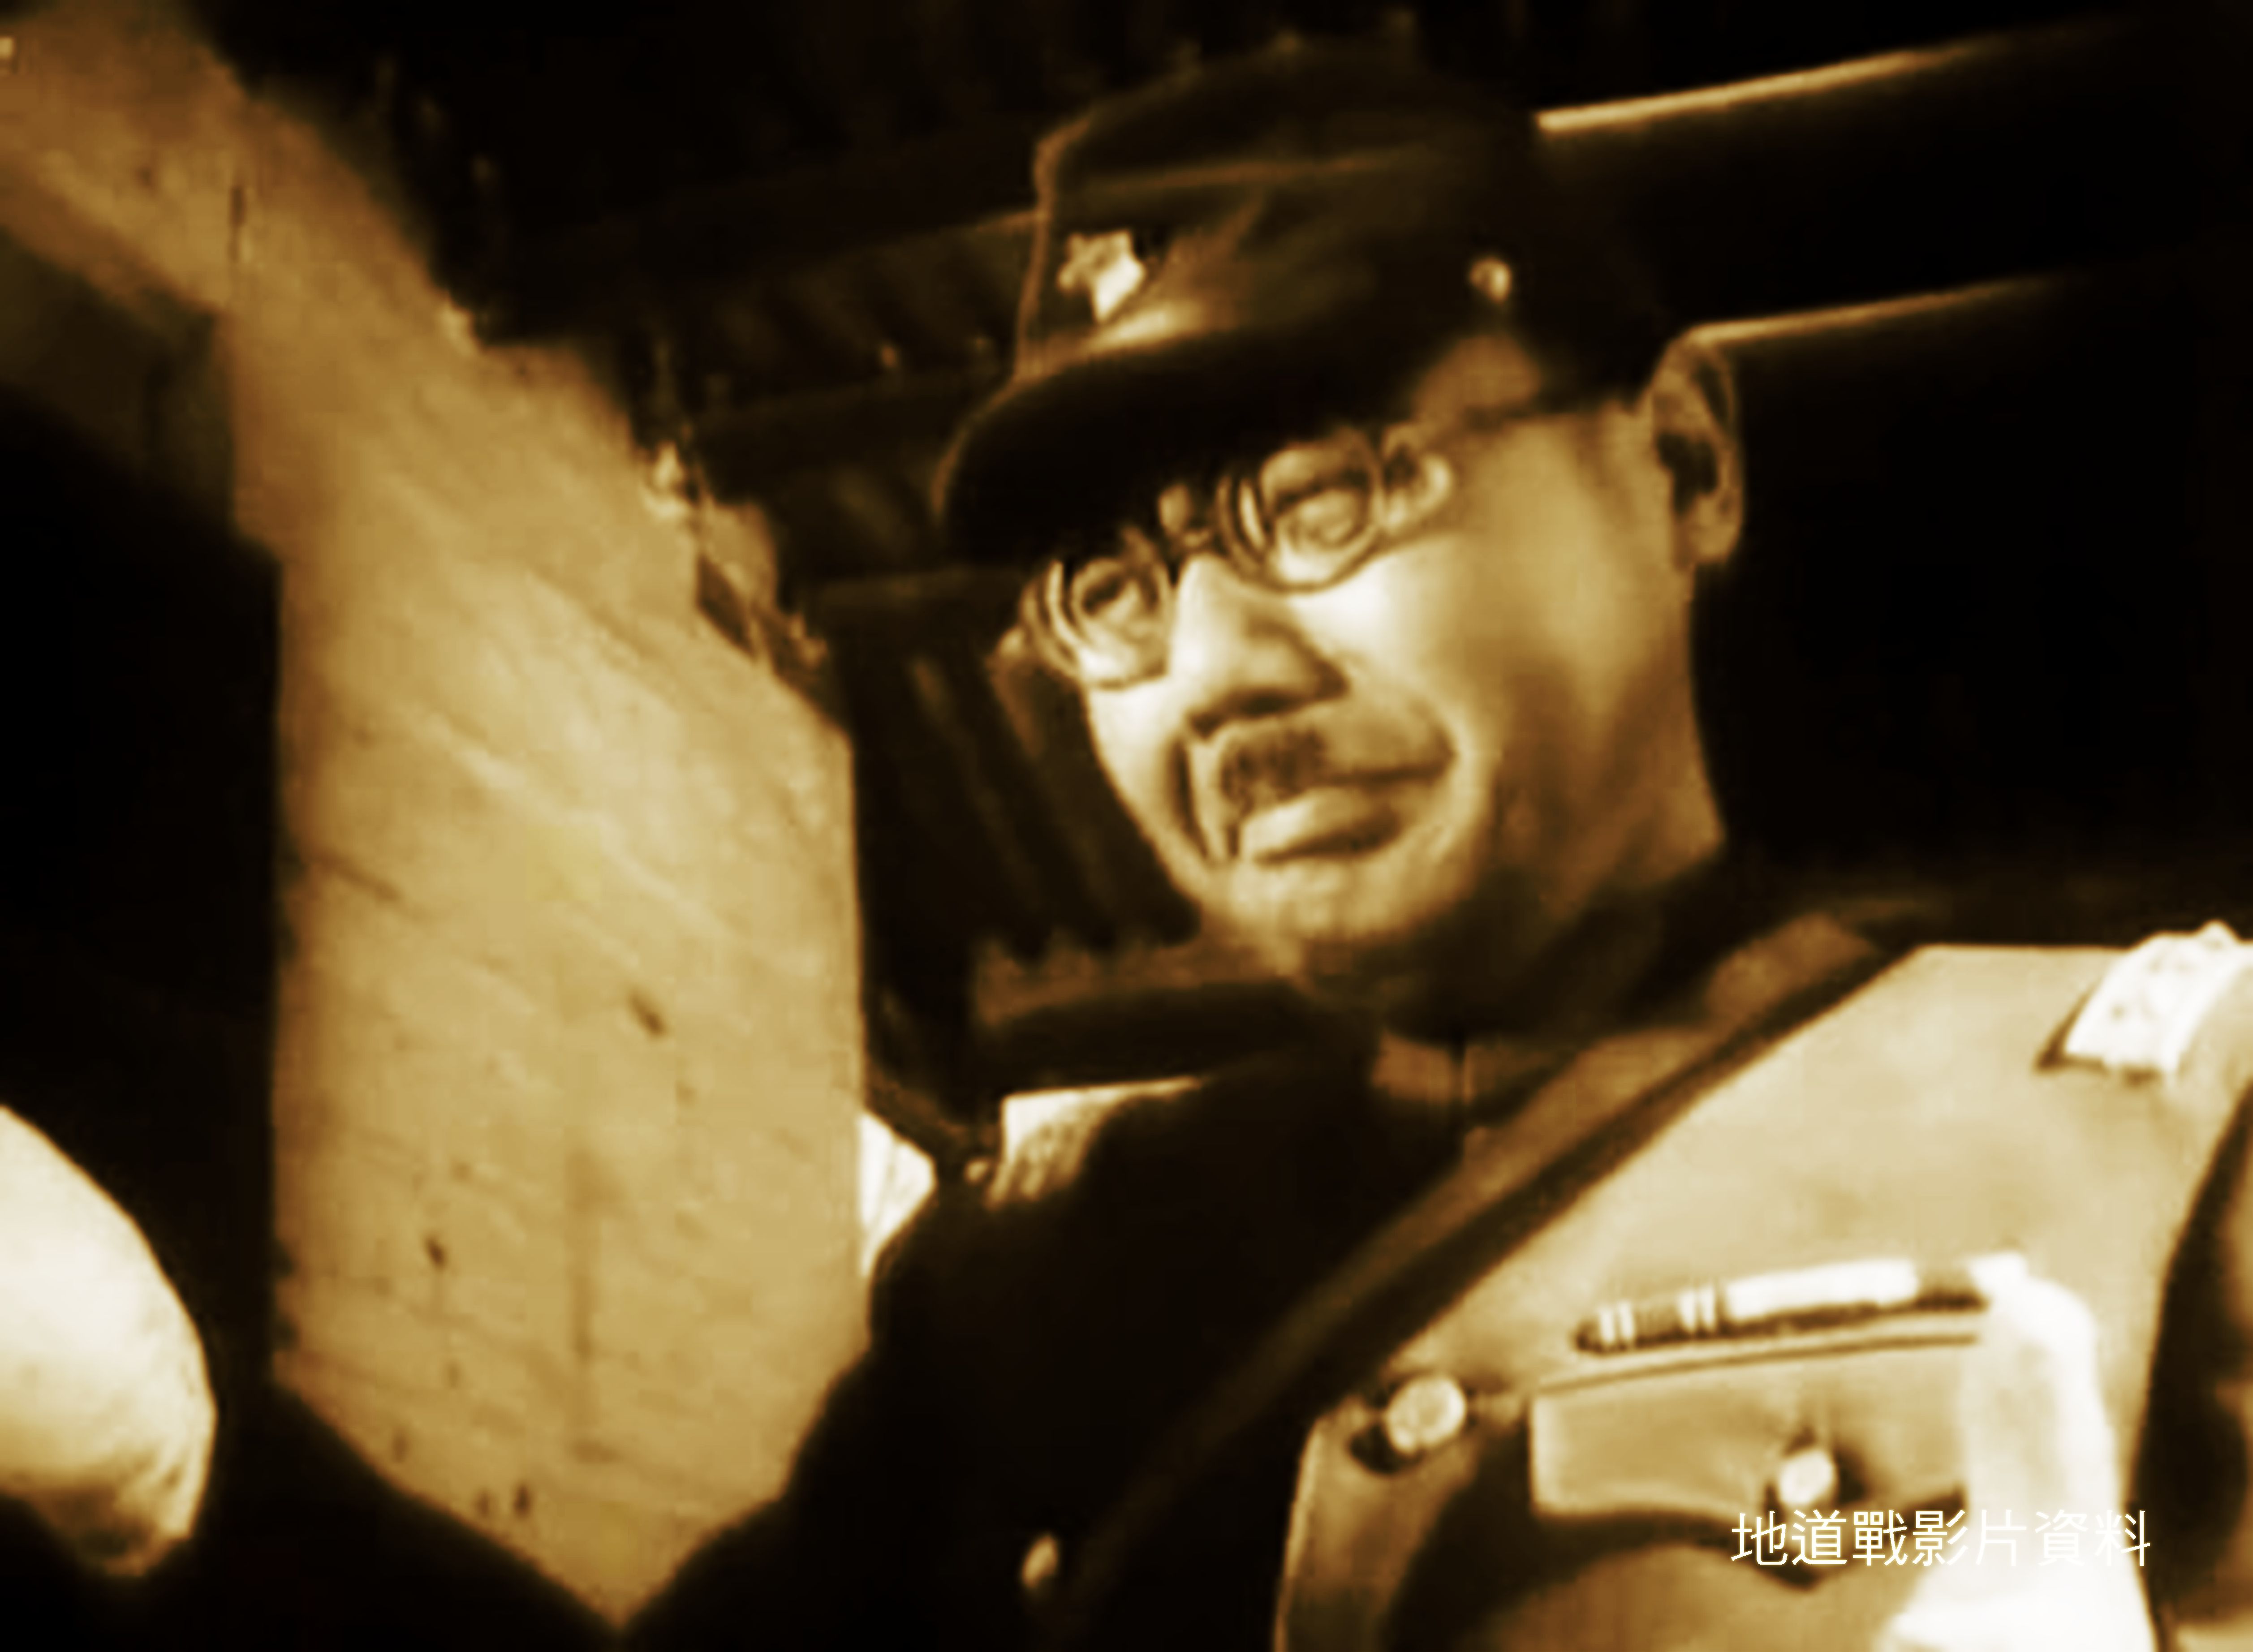 30年代日军侵华罪行-南京大屠杀视频素材,历史军事视频素材下载,高清1920X1080视频素材下载,凌点视频素材网,编号:155980